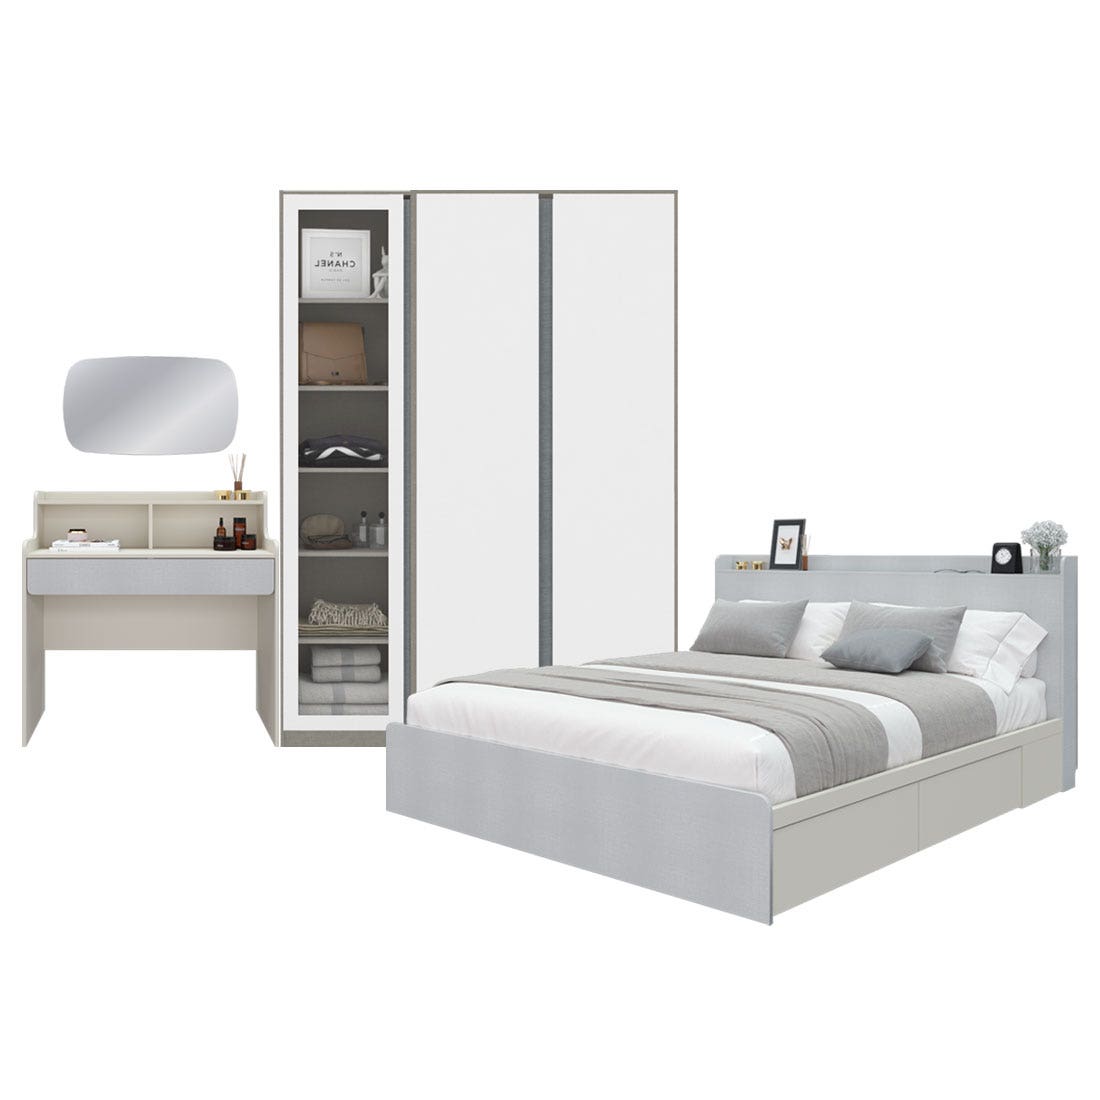 ชุดห้องนอน 6 ฟุต Aiko & Blox 150 & โตีะเครื่องแป้งพร้อมกระจก สีขาวลายผ้า01